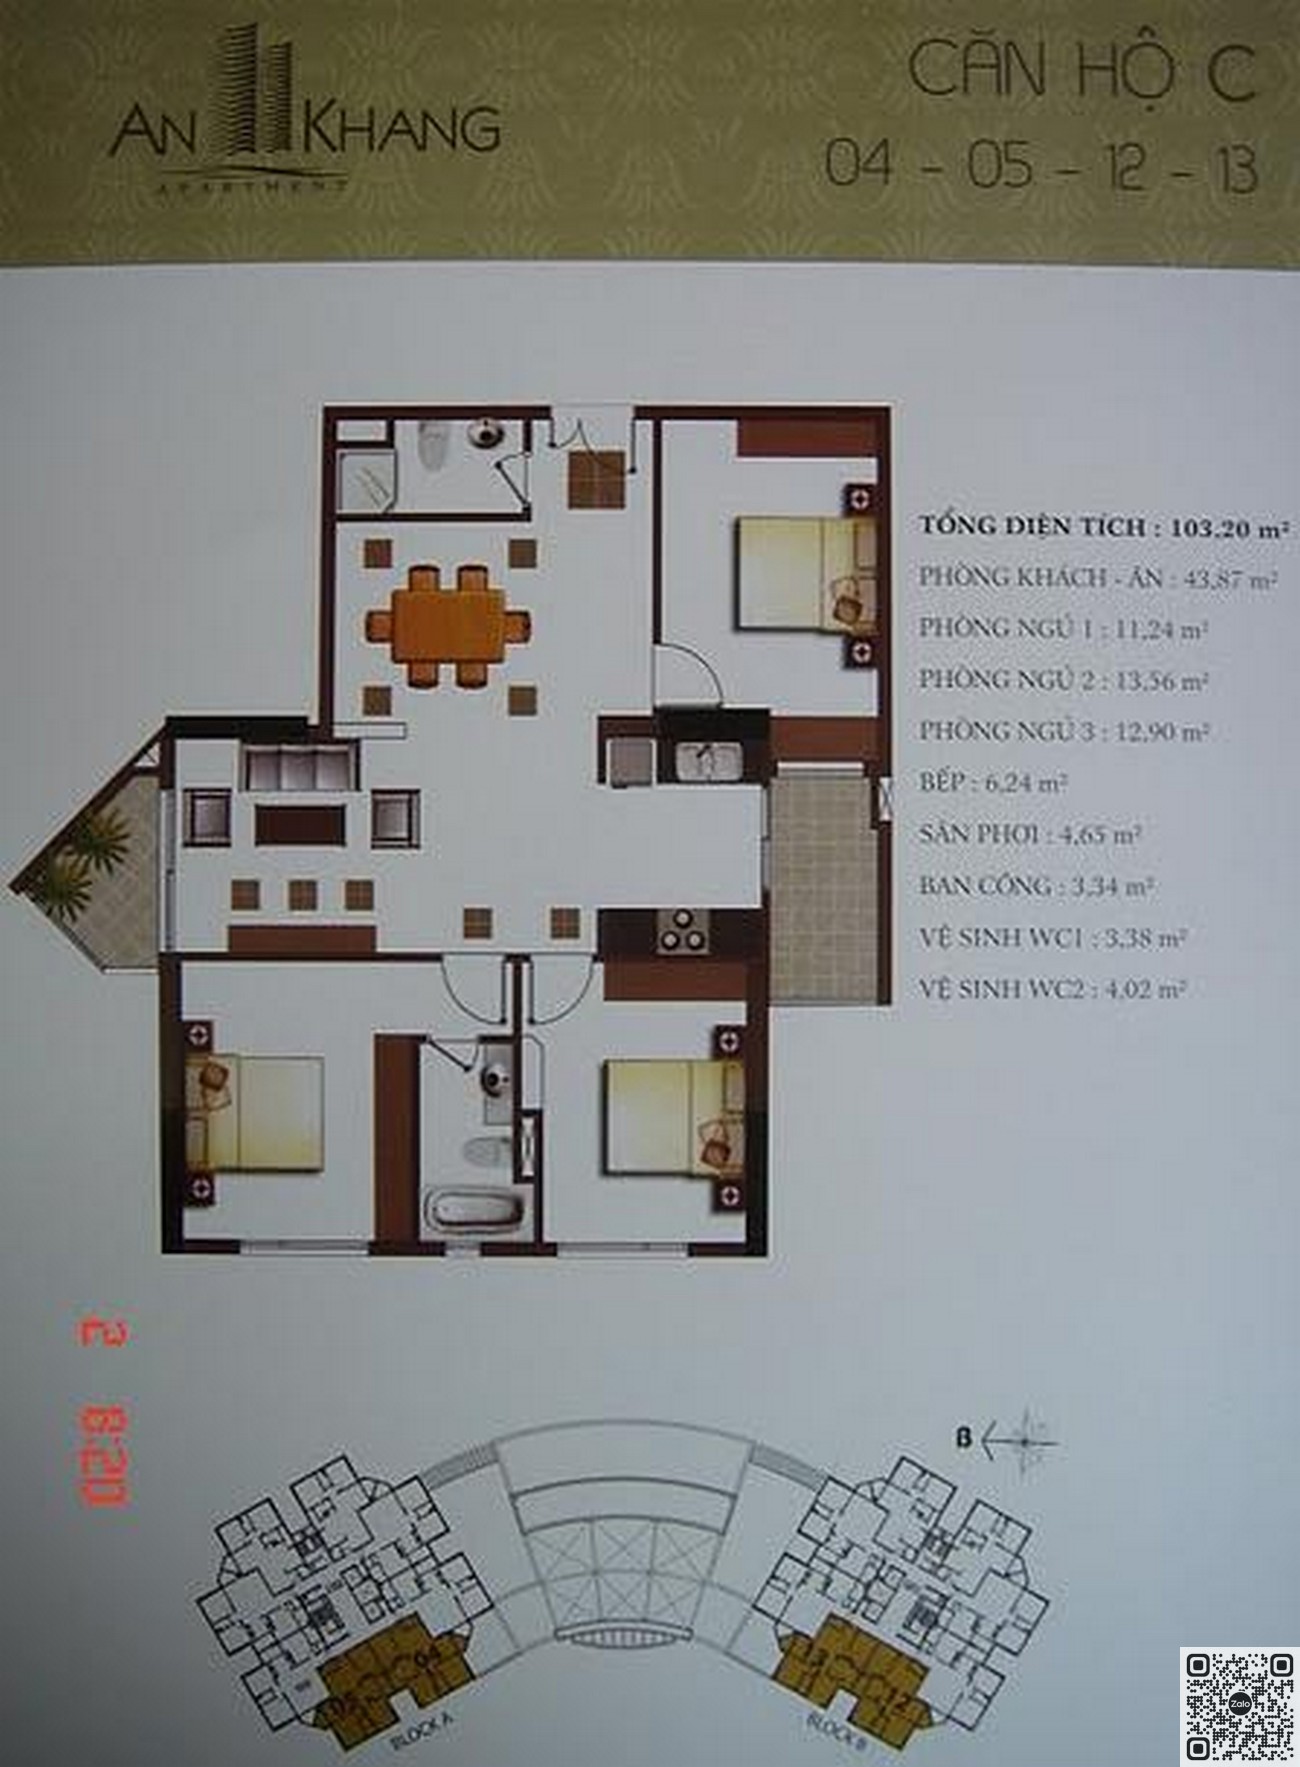 Thiết kế chi tiết căn hộ An Khang